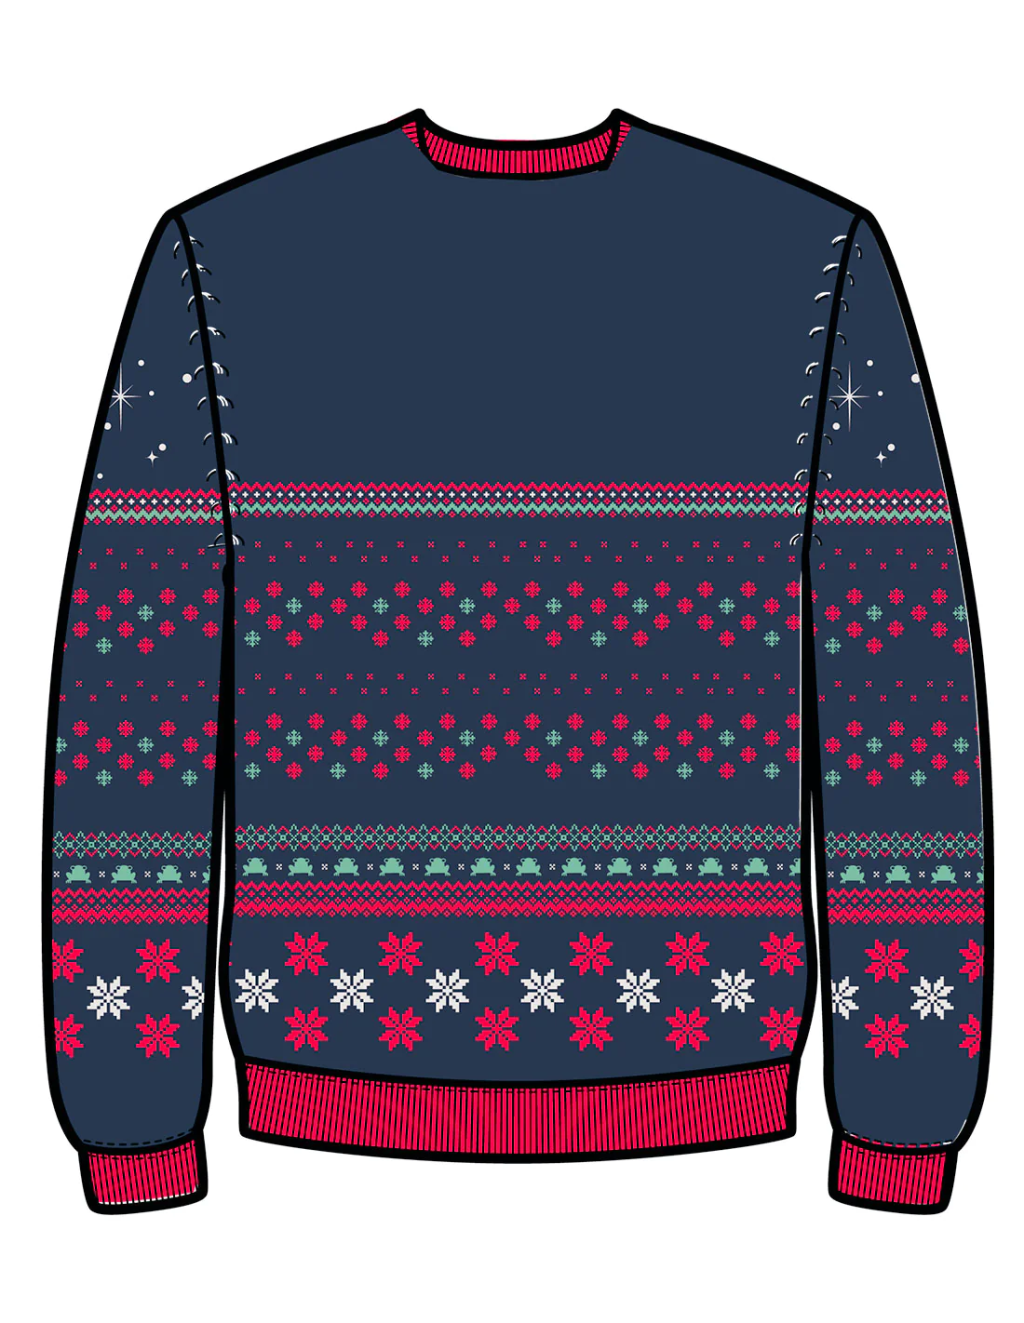 THE MANDALORIAN - Grogu - Men Christmas Sweaters (L)